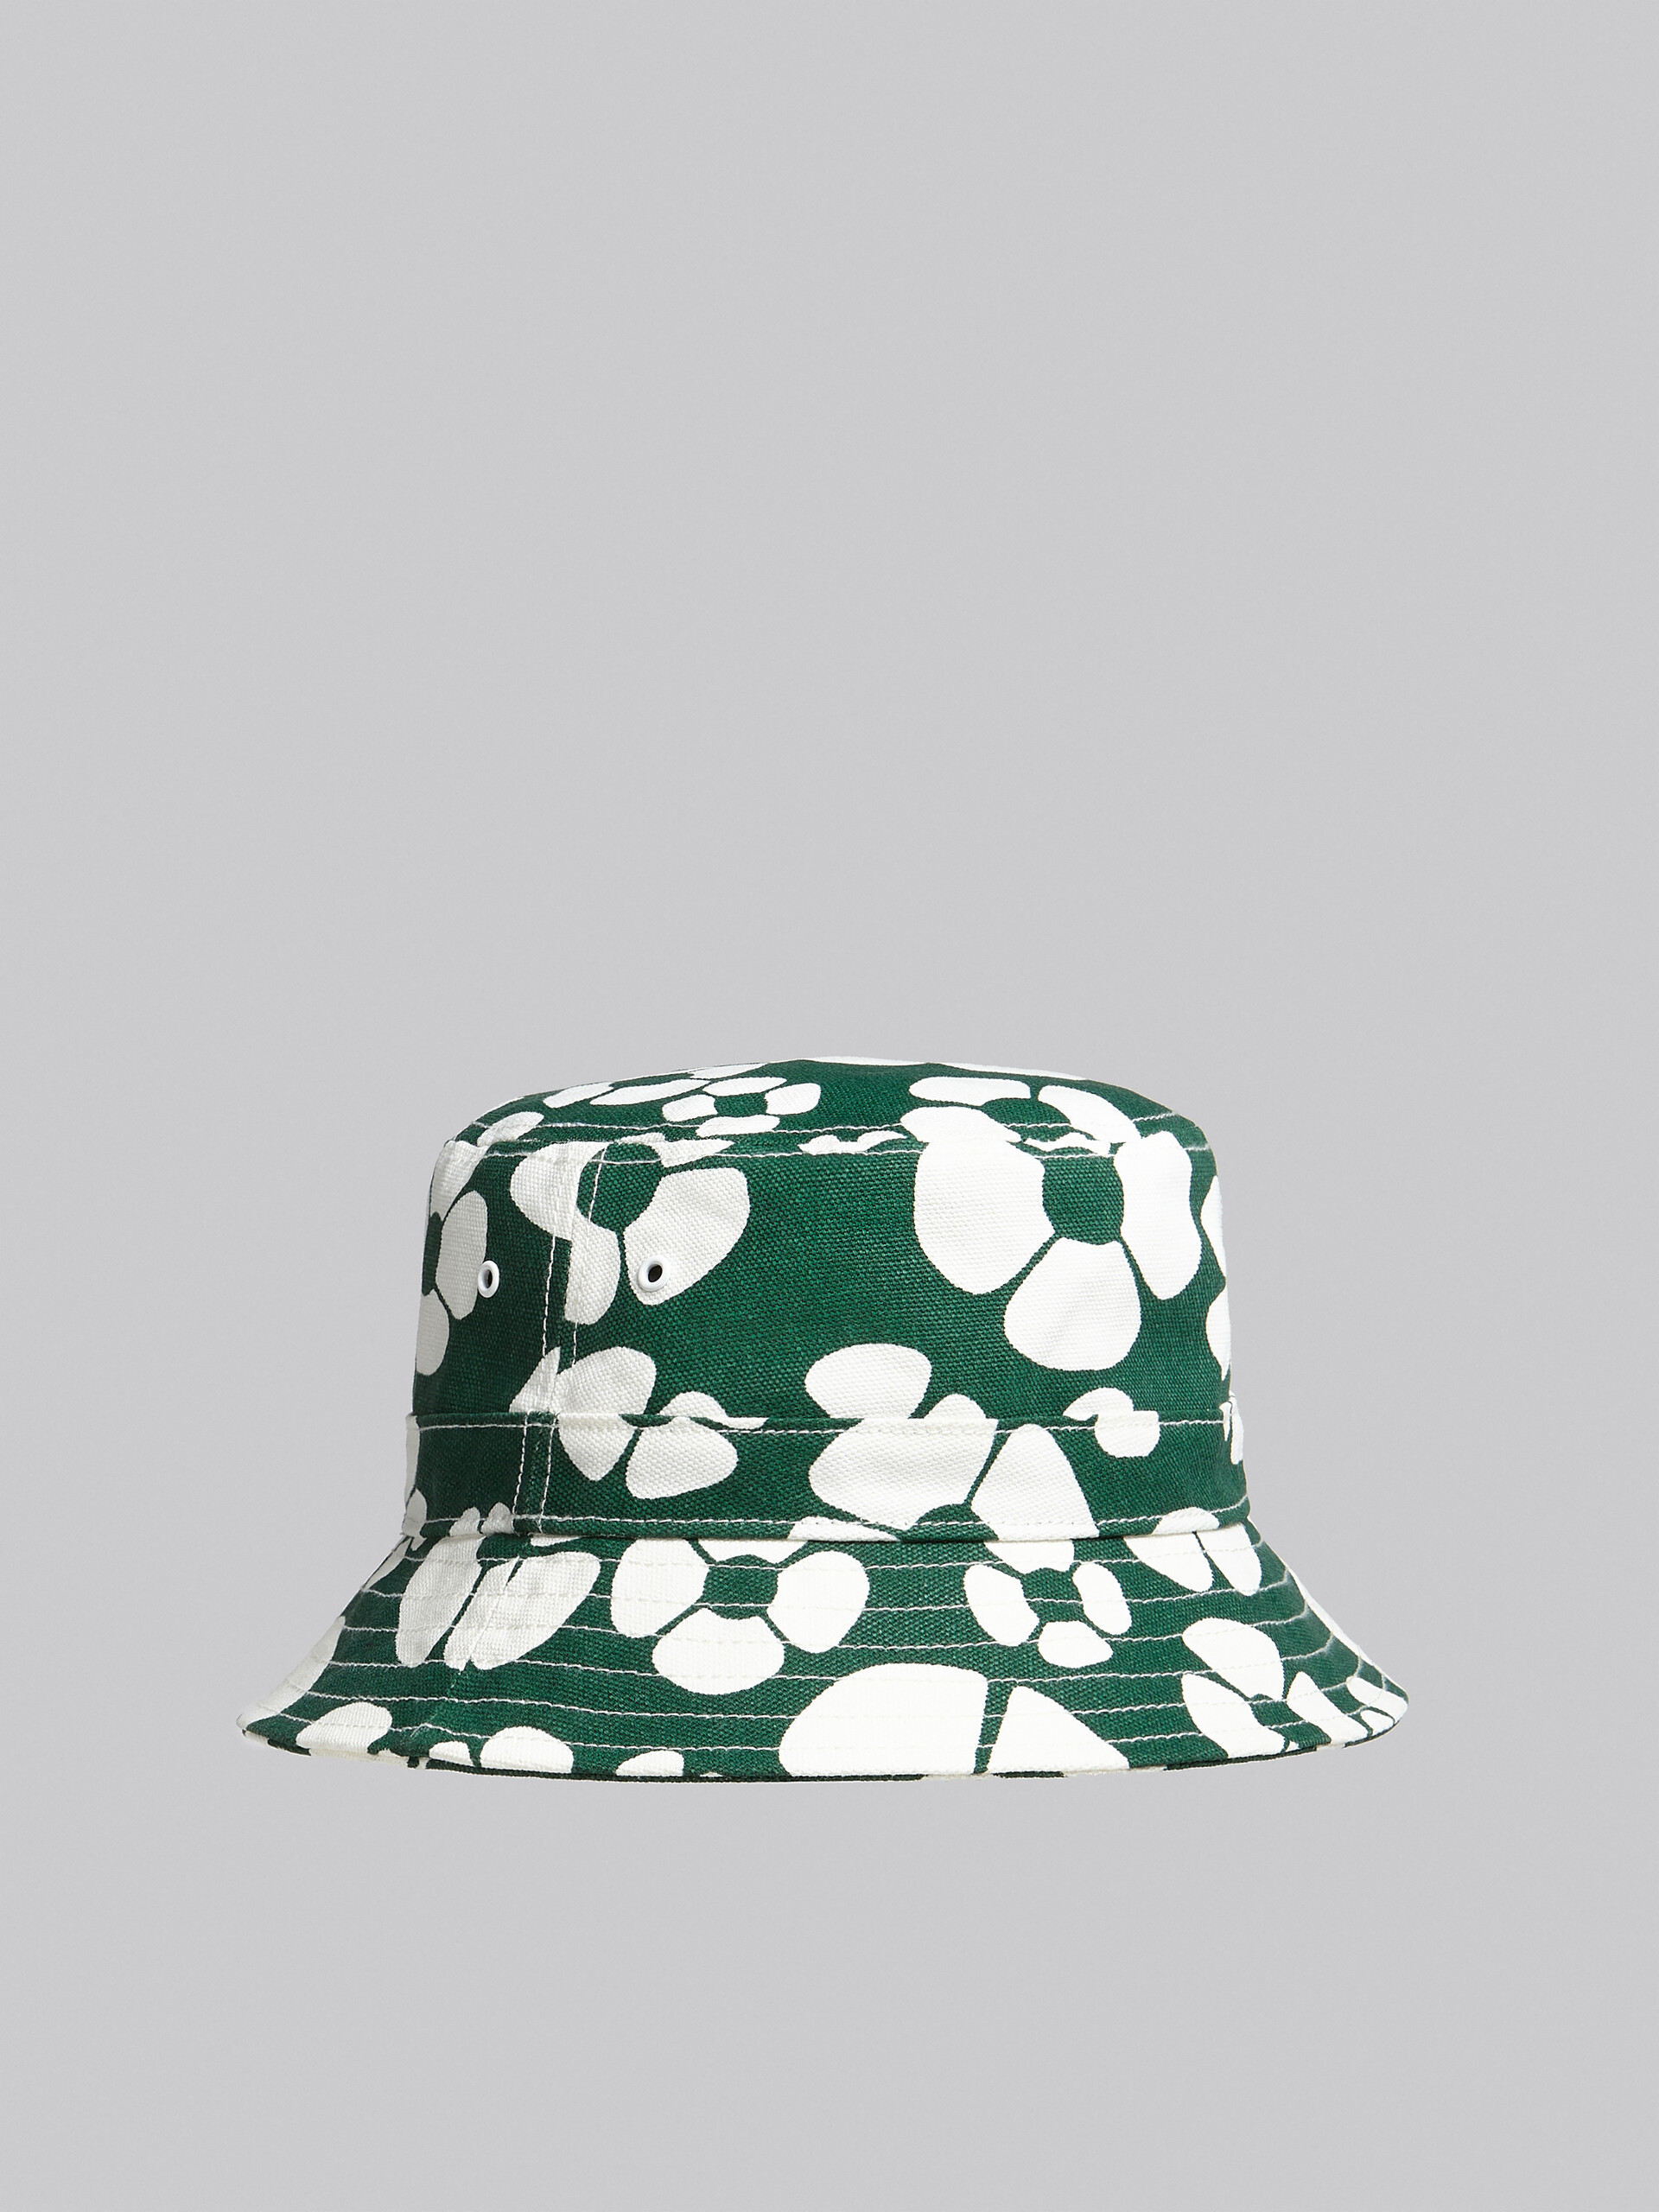 MARNI x CARHARTT WIP - green bucket hat - Hats - Image 3